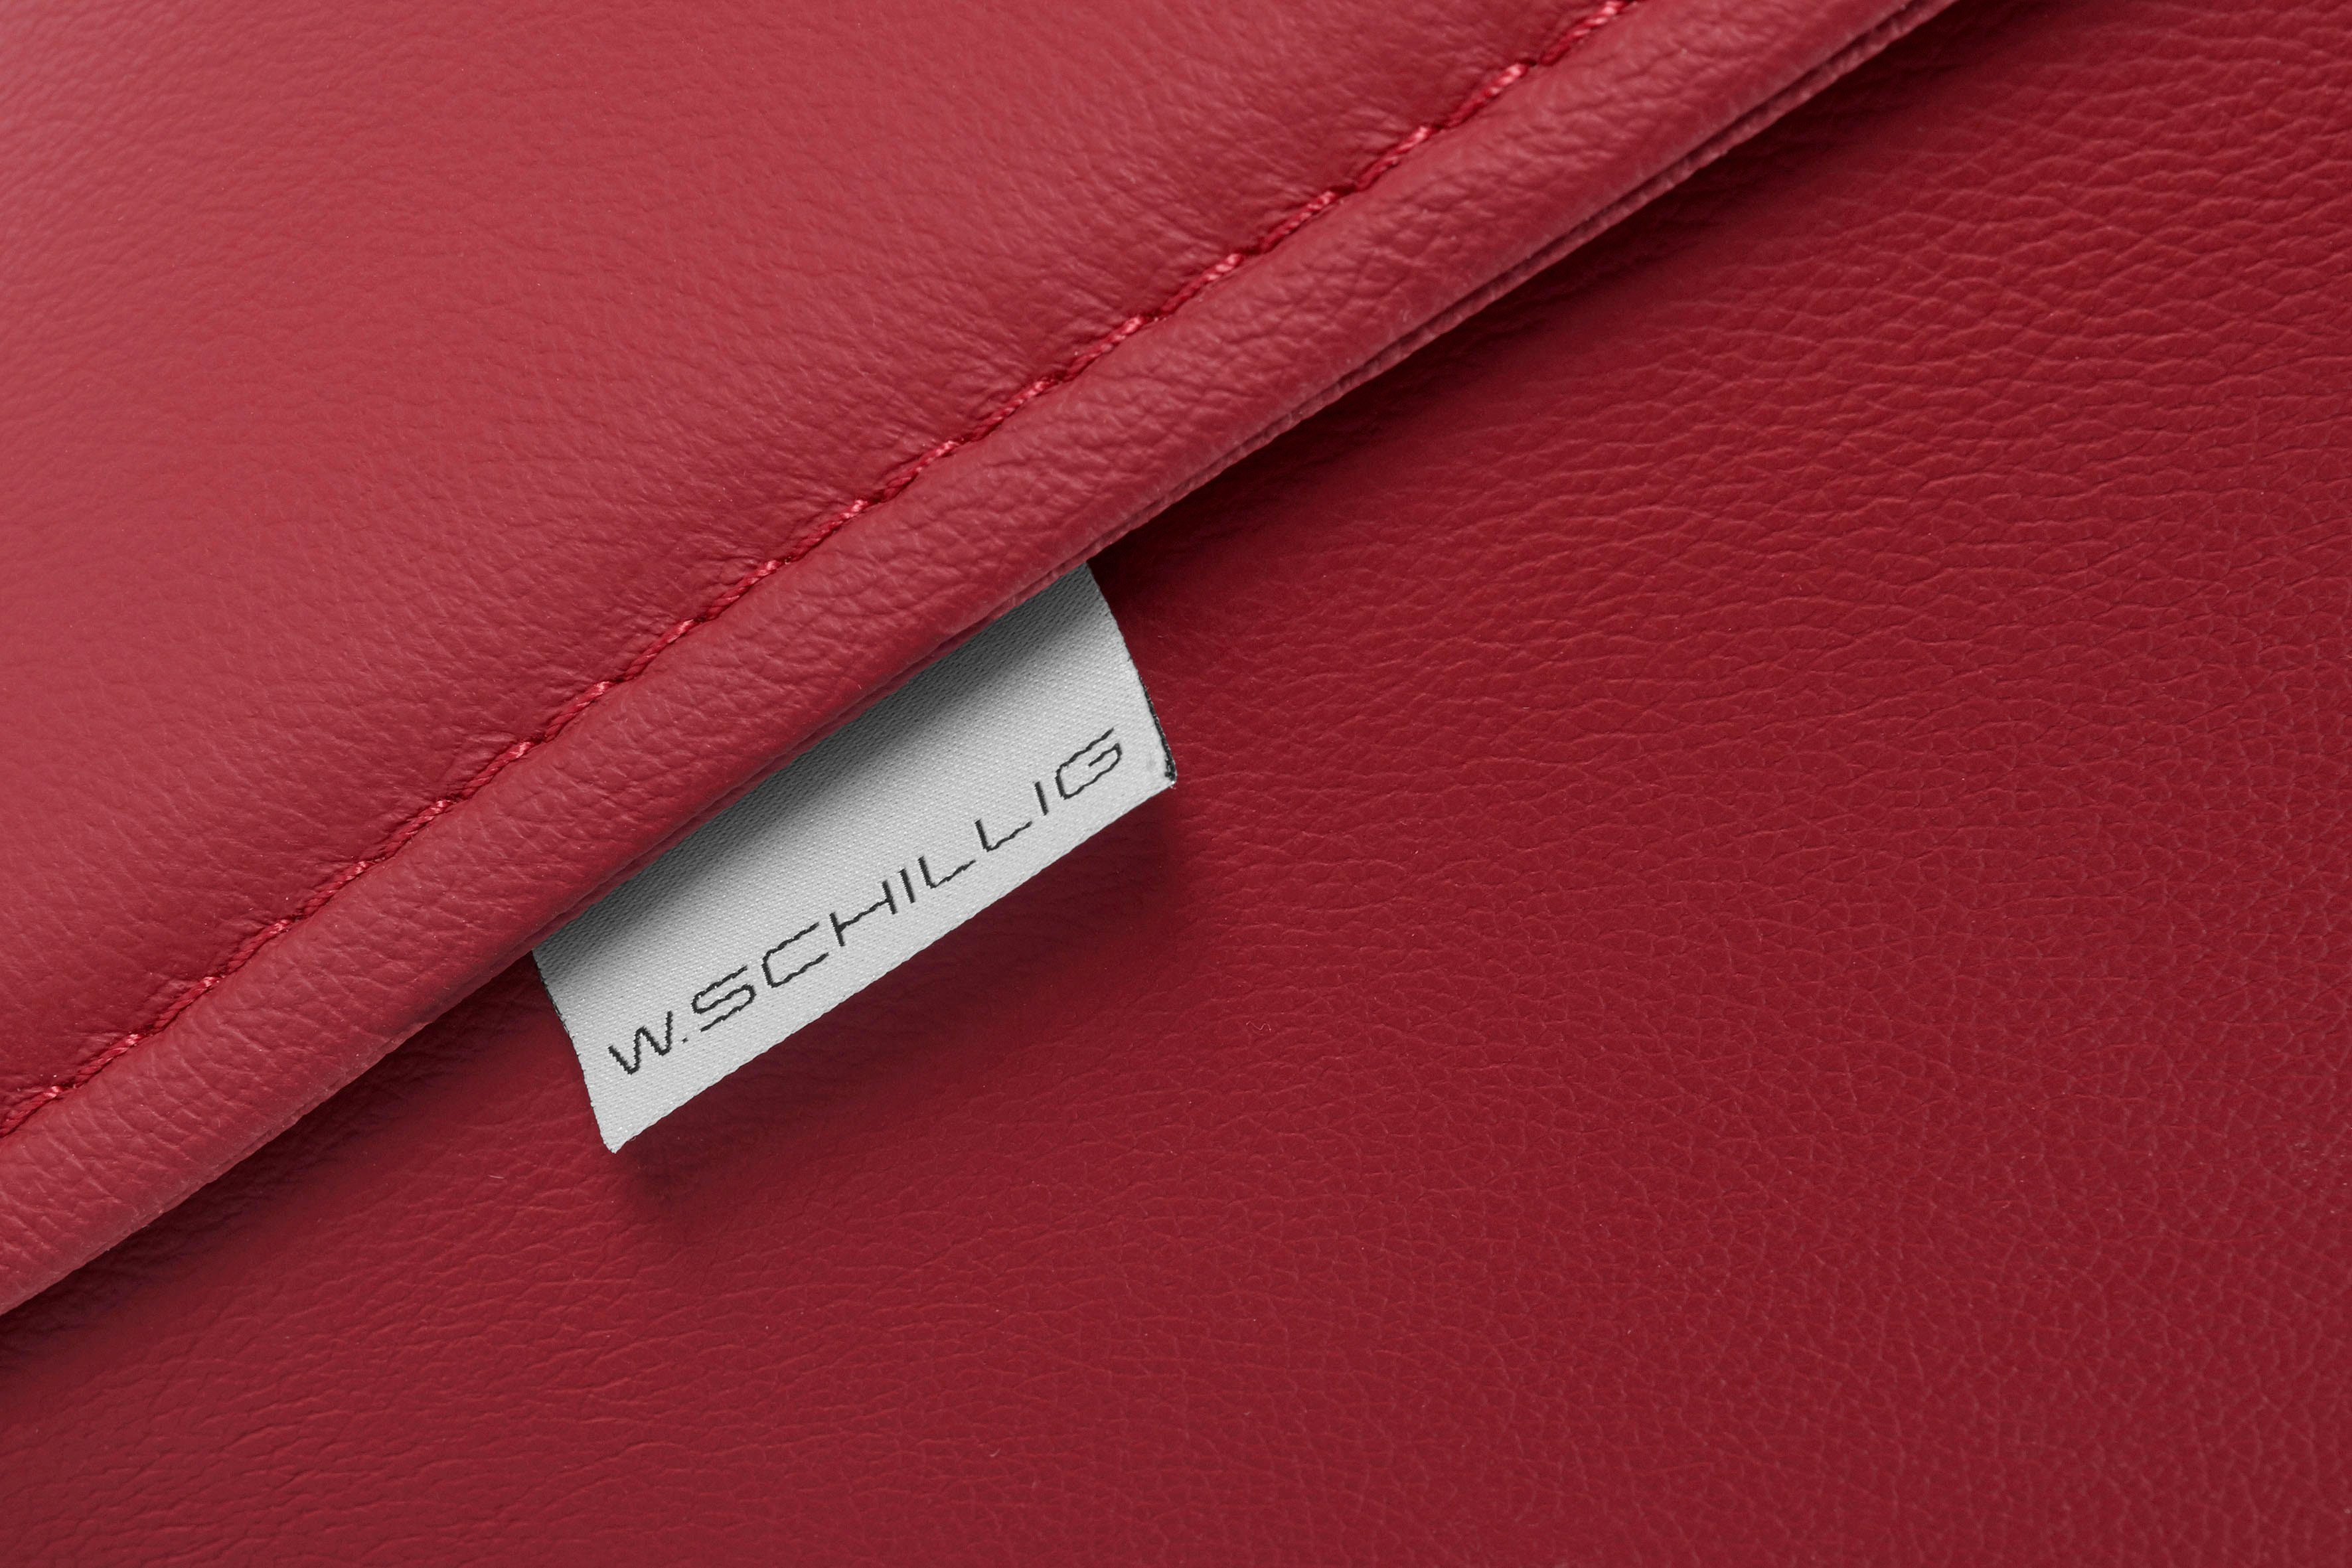 sally, Metallfüßen Chrom mit 224 Z59 W.SCHILLIG cm glänzend, Breite red 3-Sitzer in ruby